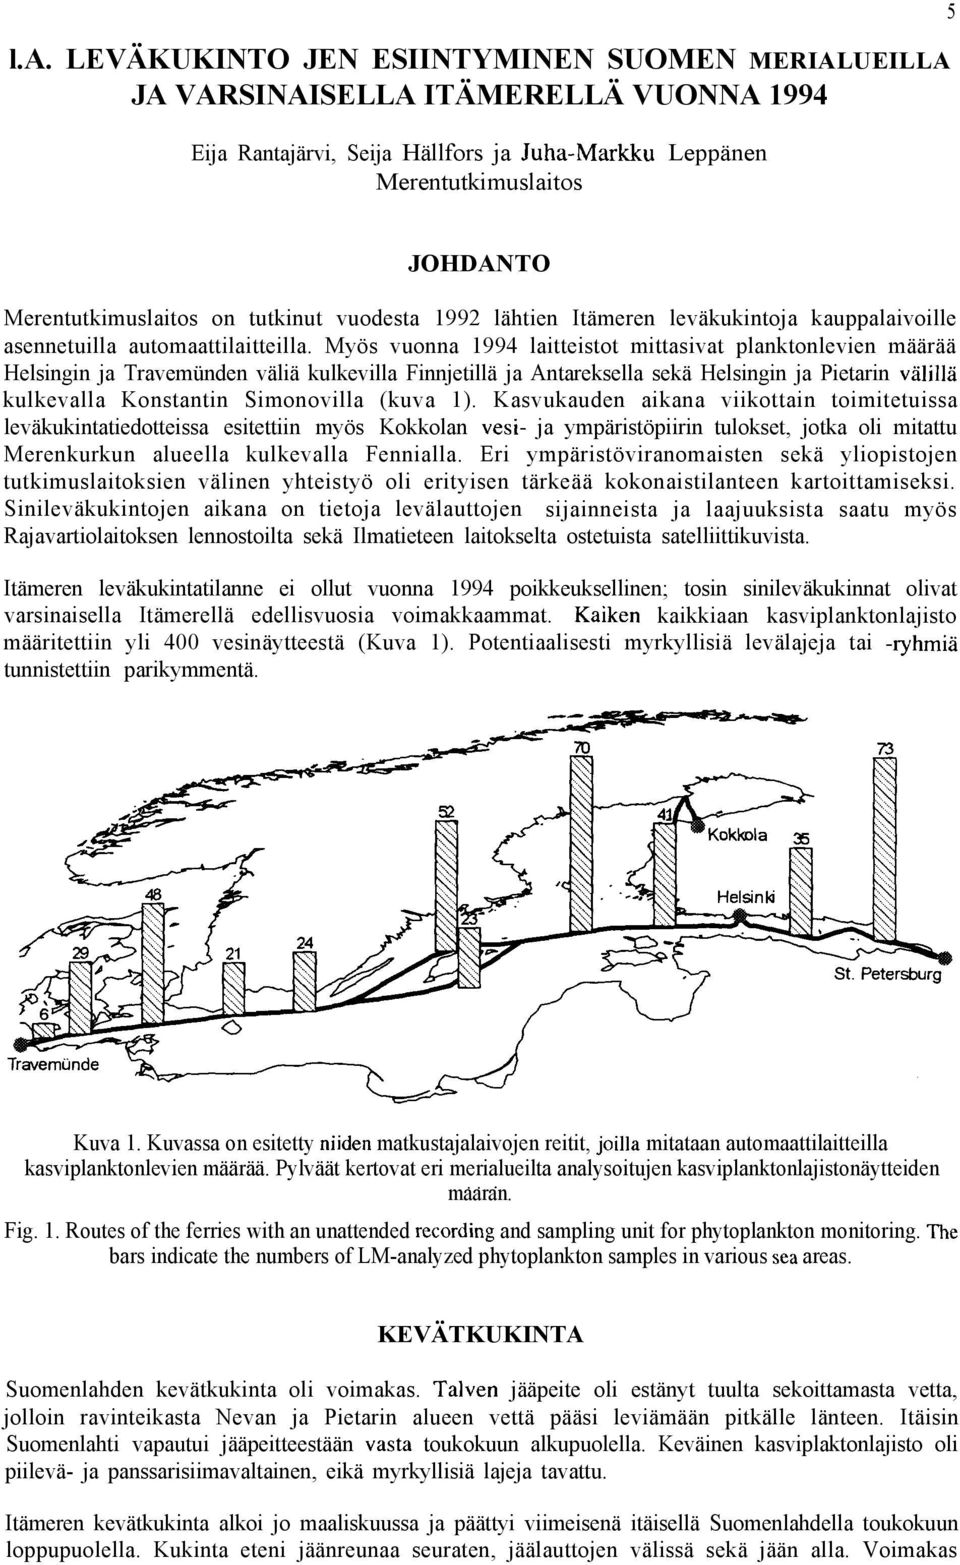 Myös vuonna 1994 laitteistot mittasivat planktonlevien määrää Helsingin ja Travemünden väliä kulkevilla Finnjetillä ja Antareksella sekä Helsingin ja Pietarin välillä kulkevalla Konstantin